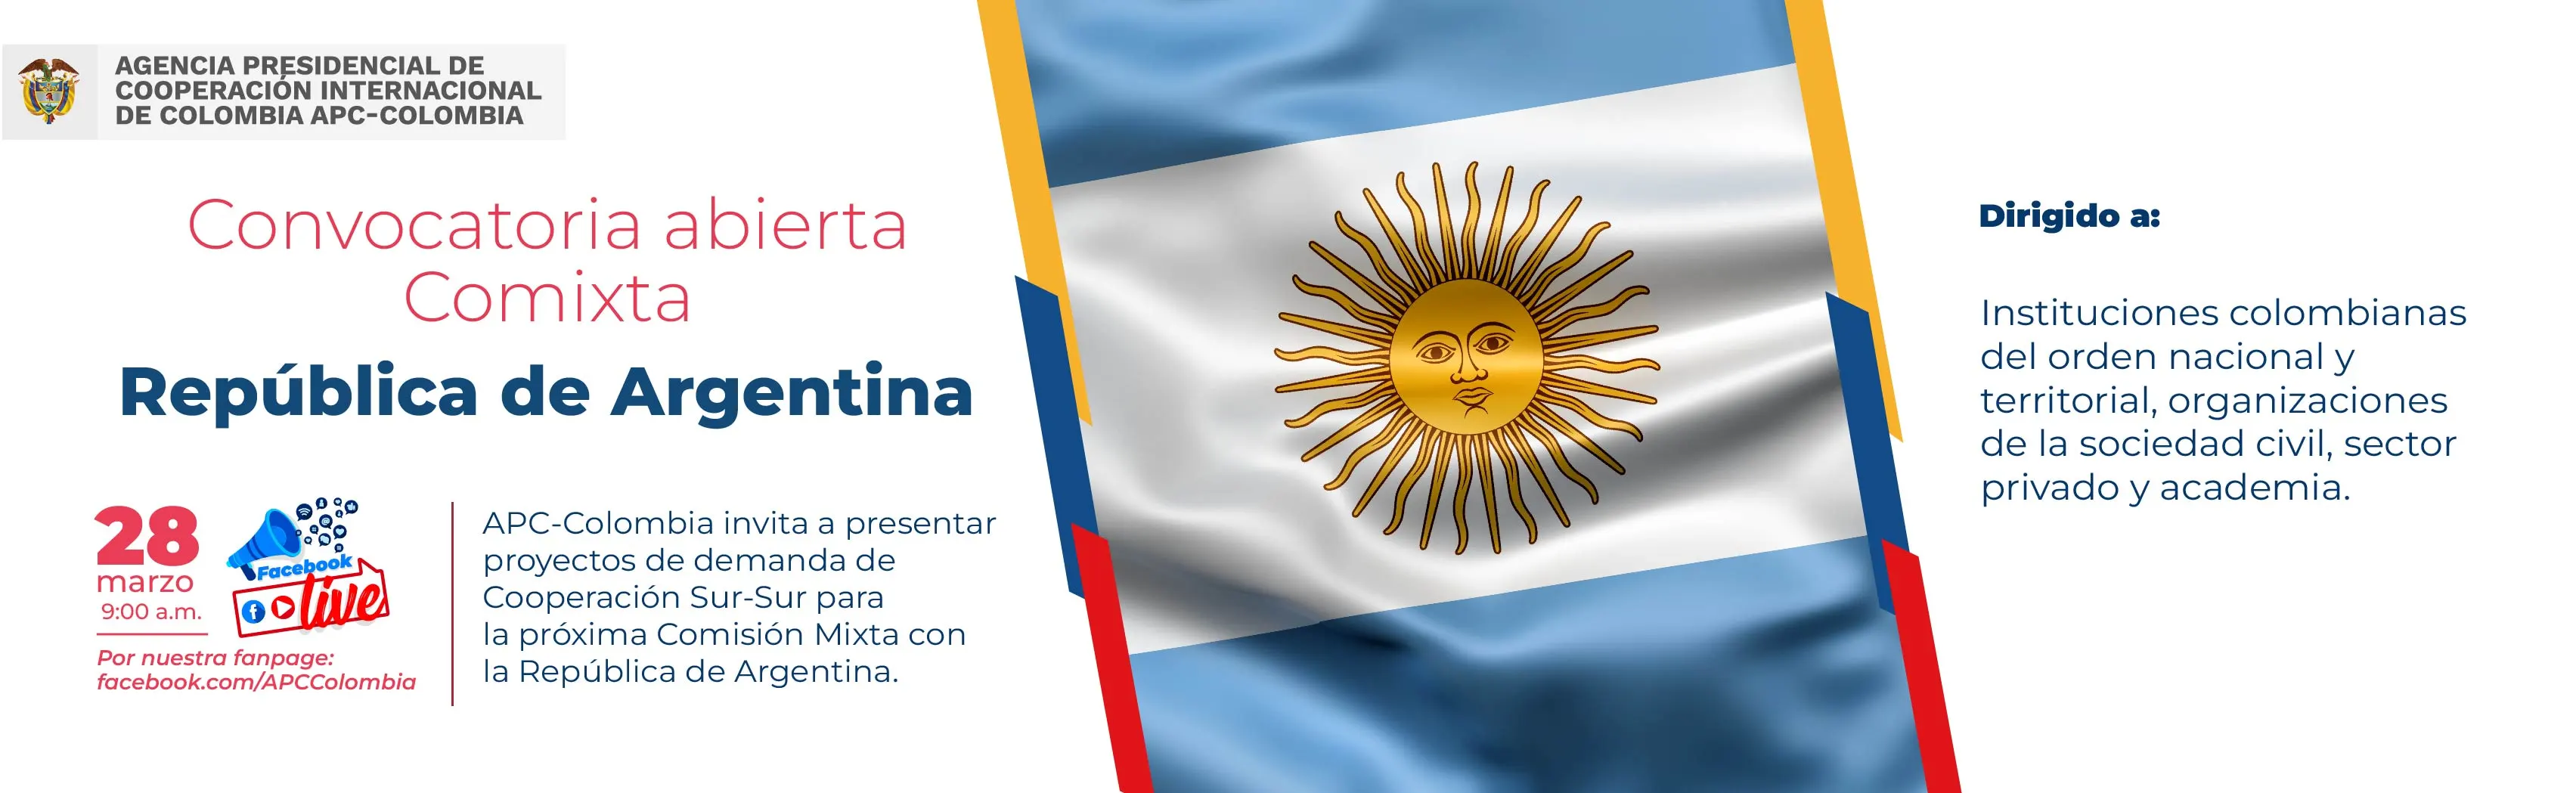 Comixta entre Colombia y Argentina, Facebook live para los términos de la convocatoria el 28 de marzo, en el medio la bandera de Argentina